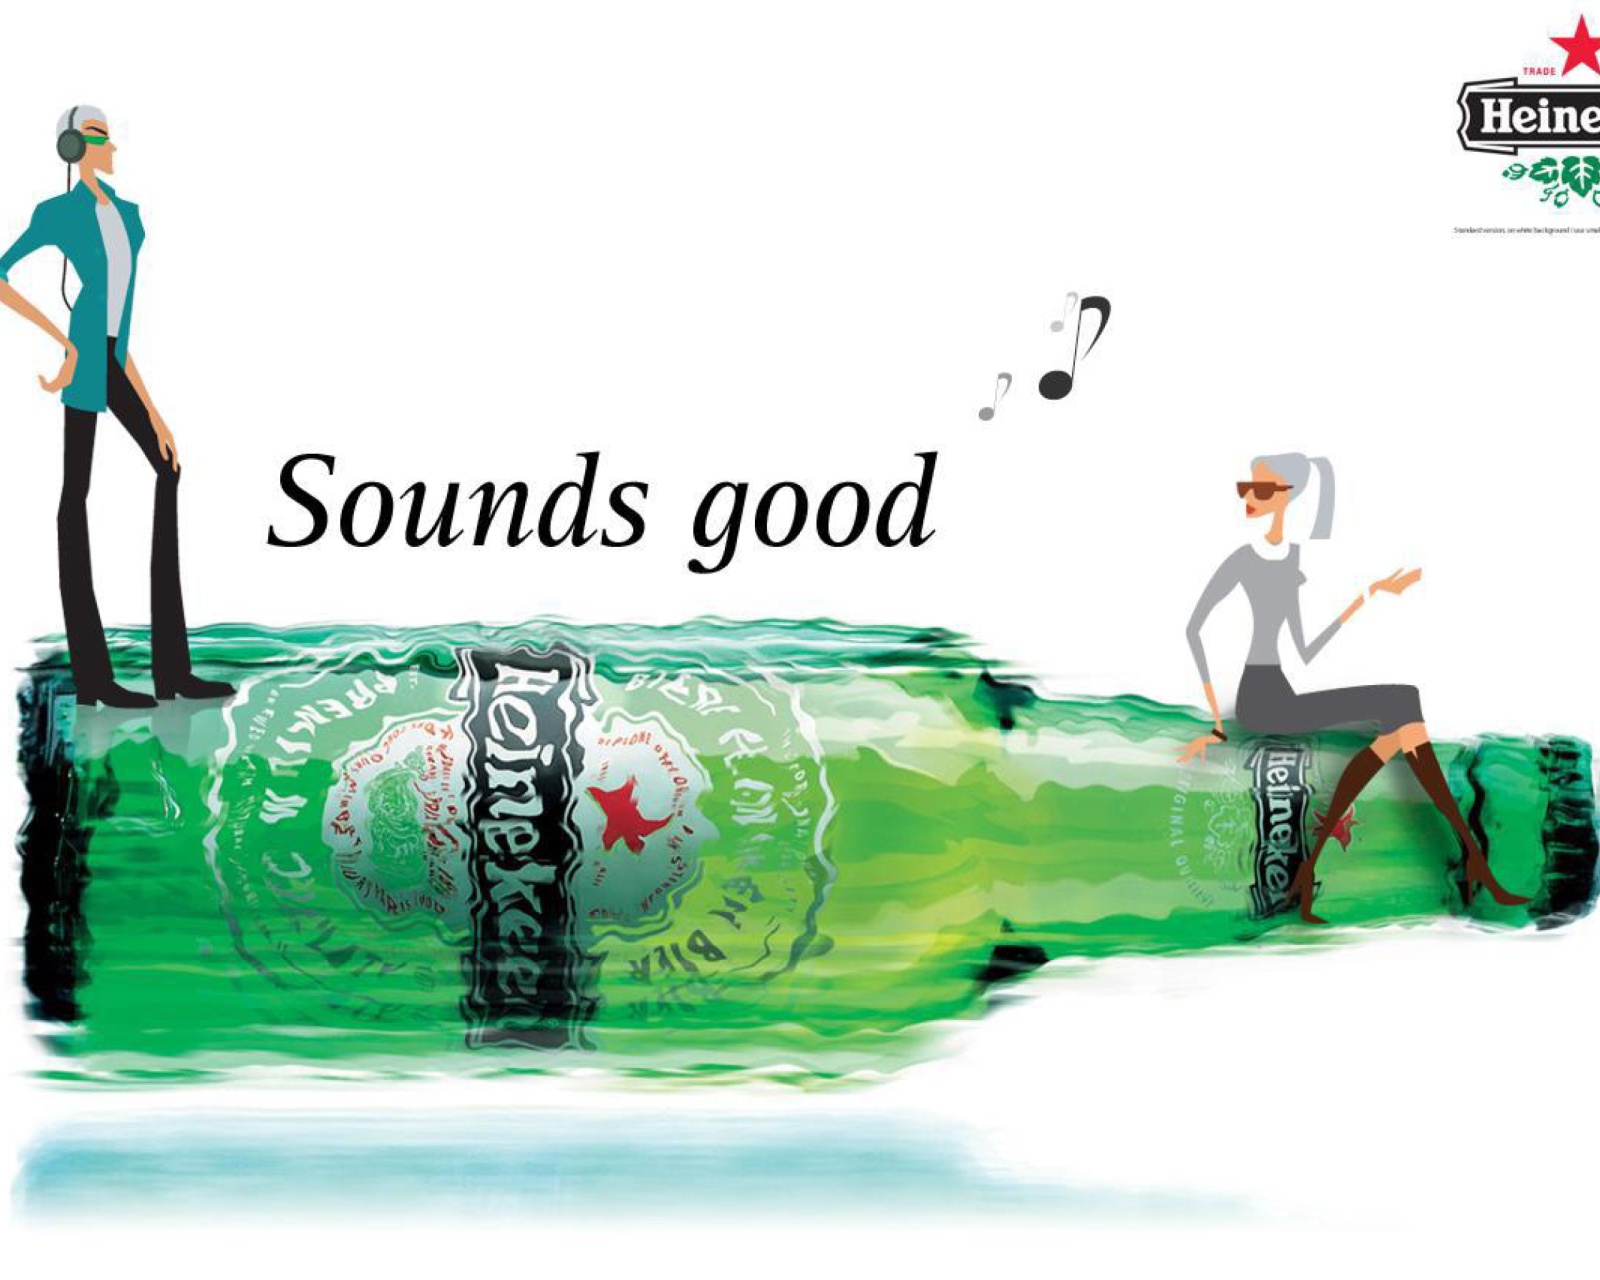 Heineken, Sounds good screenshot #1 1600x1280